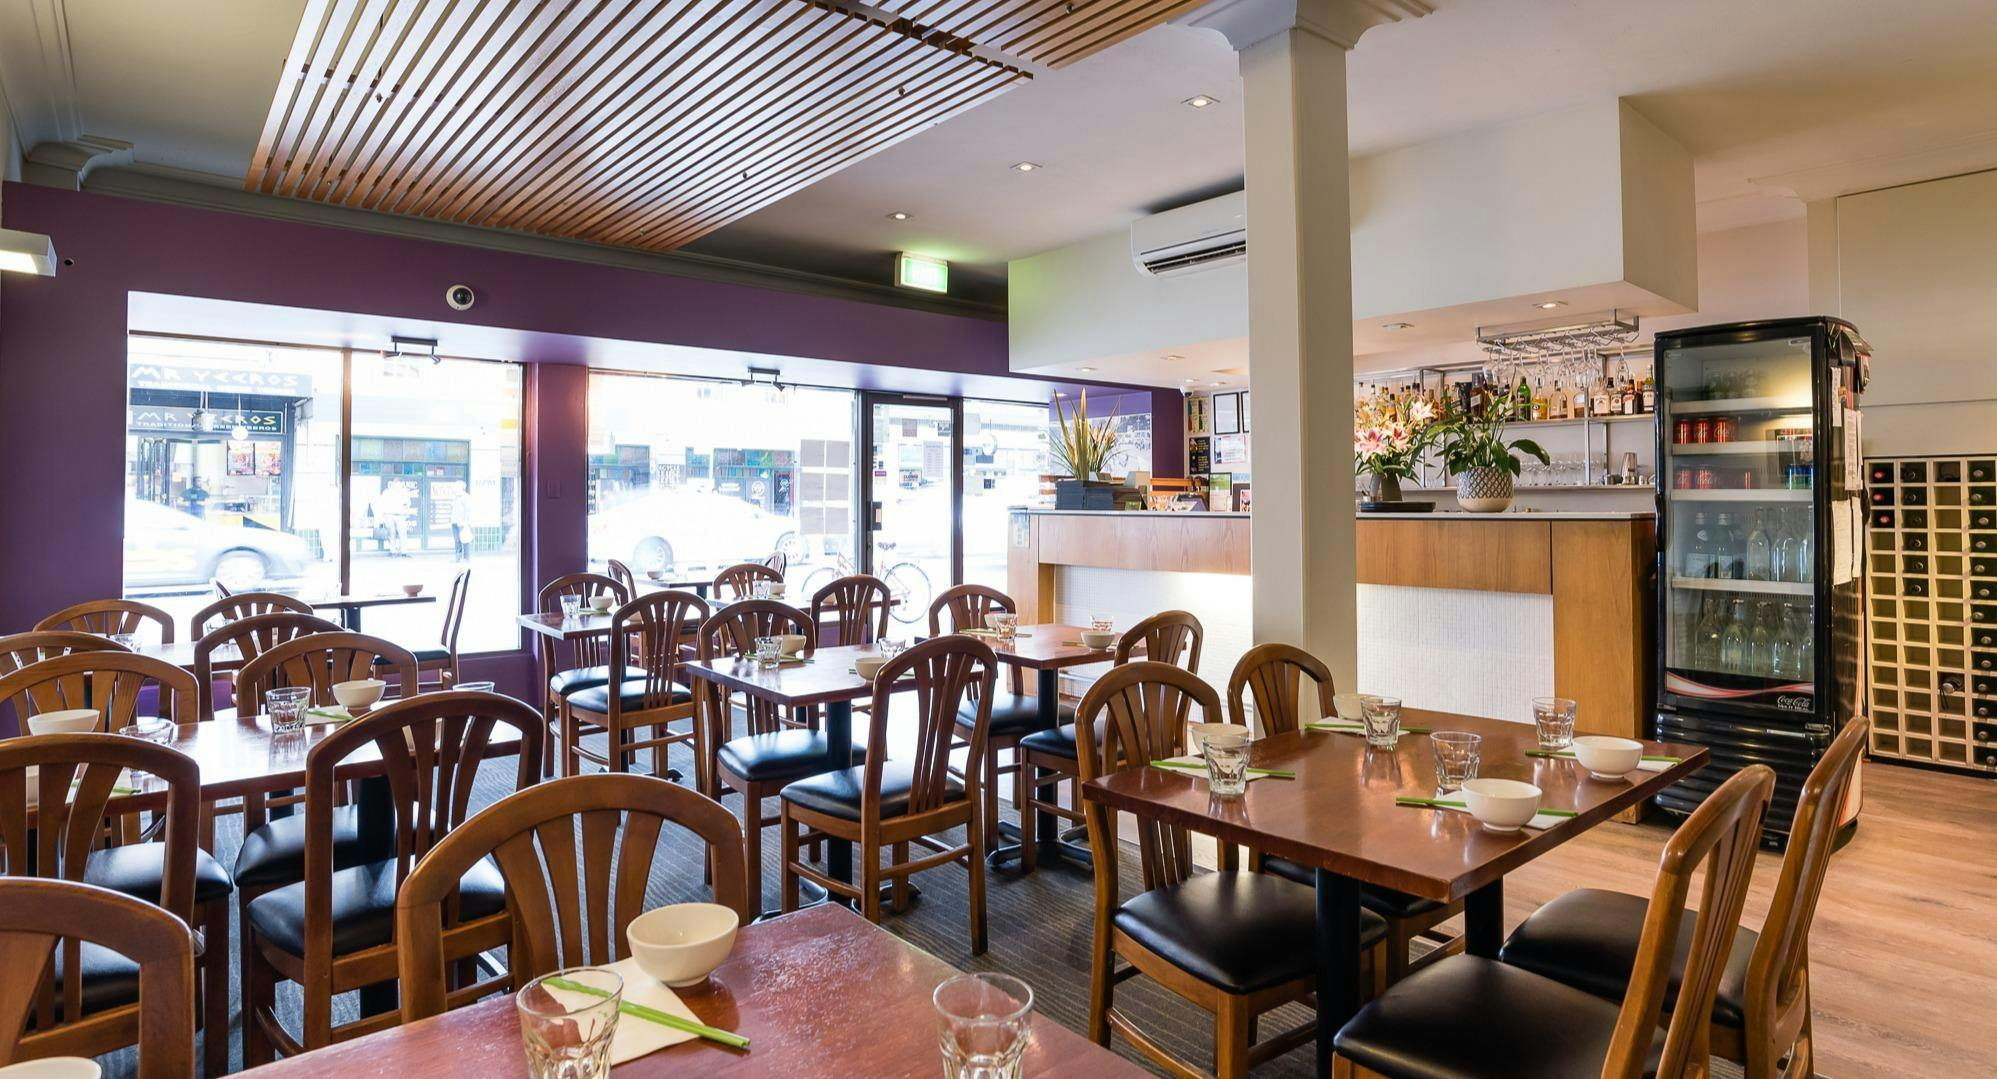 Photo of restaurant Tre Viet - Newtown in Newtown, Sydney